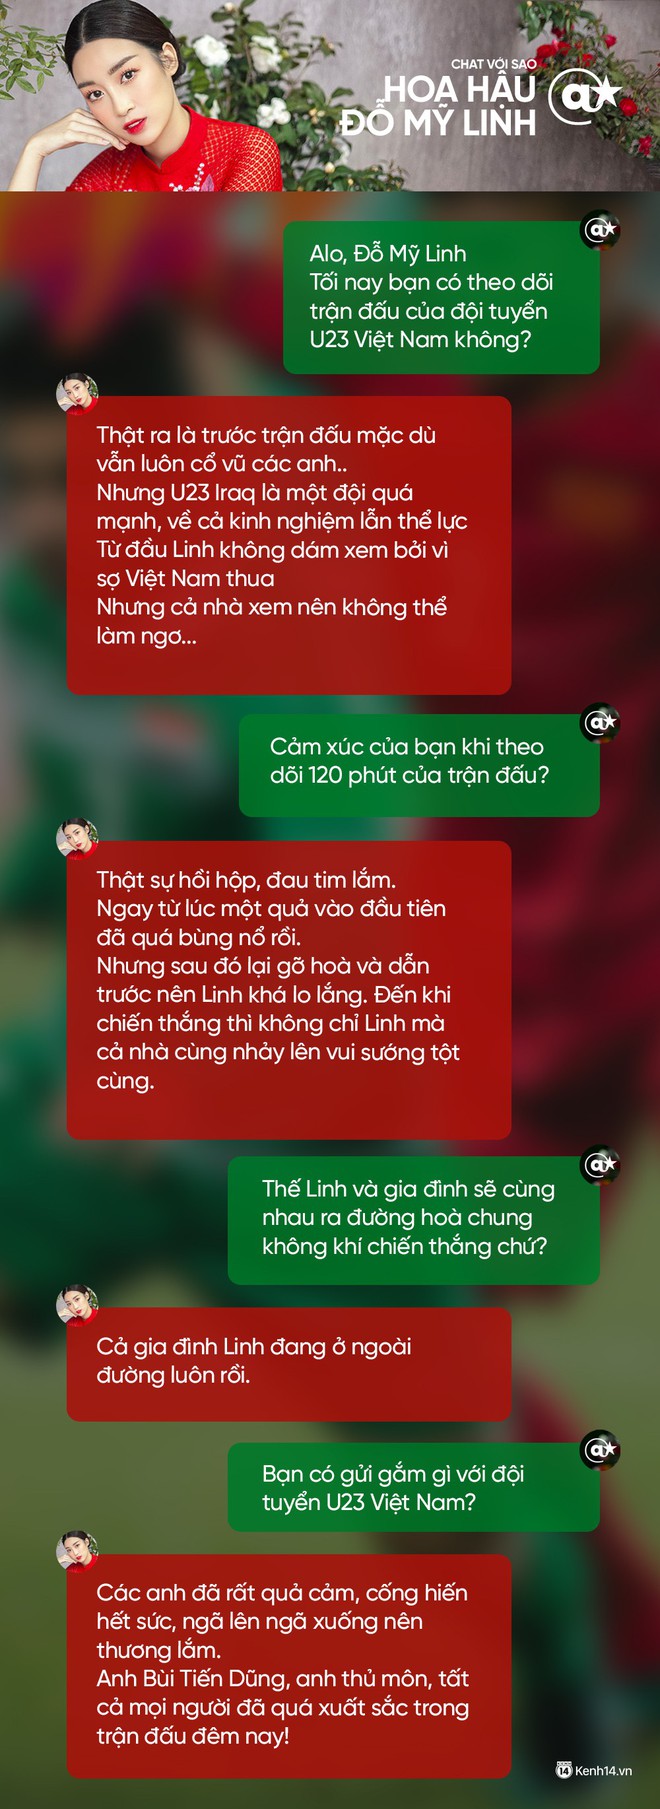 Chat cực nhanh: Tuấn Hưng, Duy Mạnh và dàn sao hào hứng nhắn gửi đến U23 Việt Nam - Ảnh 4.